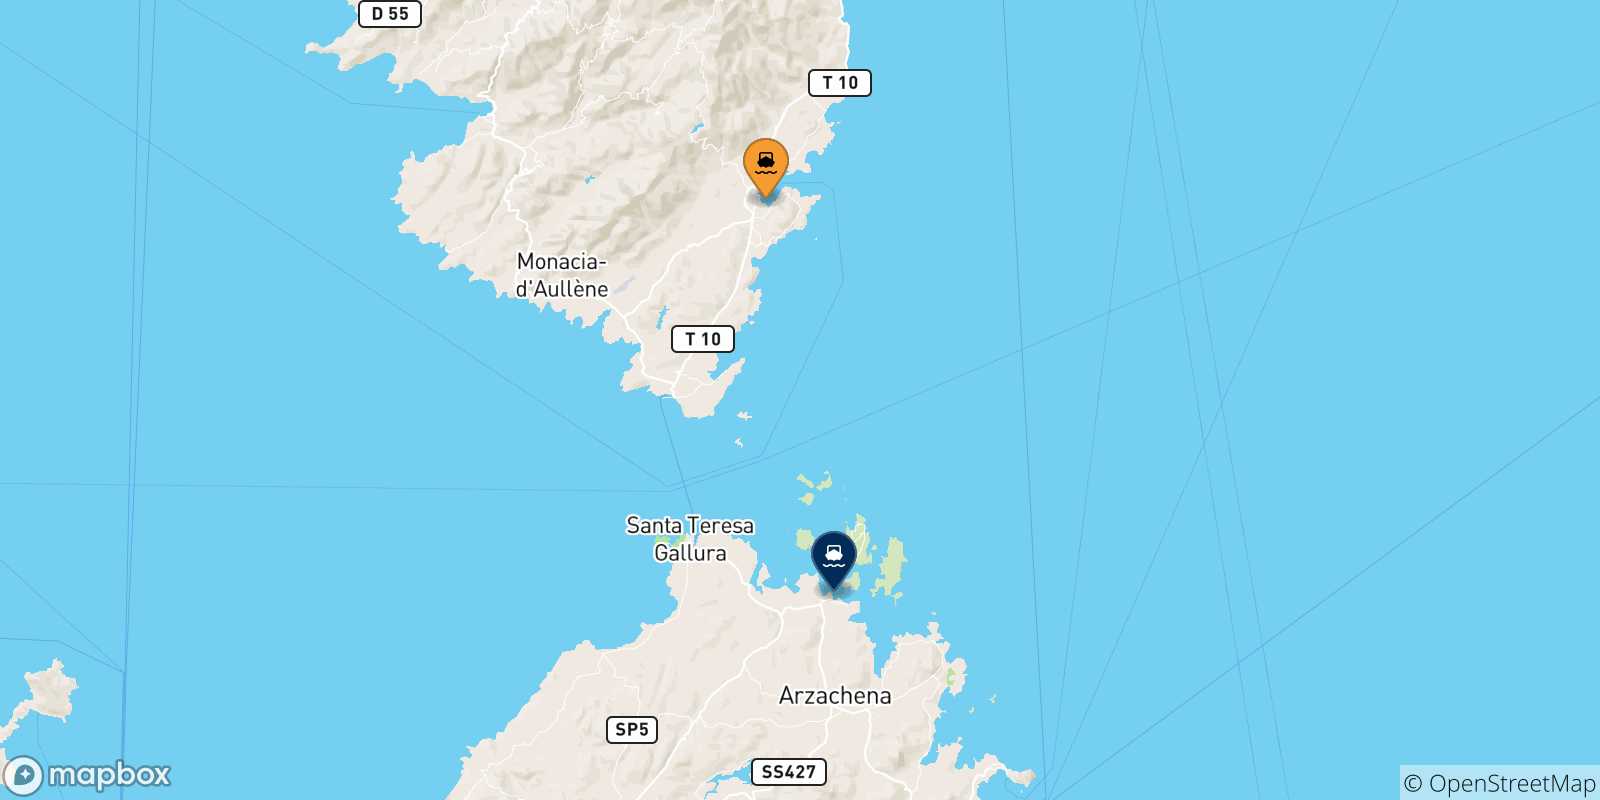 Mappa delle possibili rotte tra la Corsica e Golfo Aranci